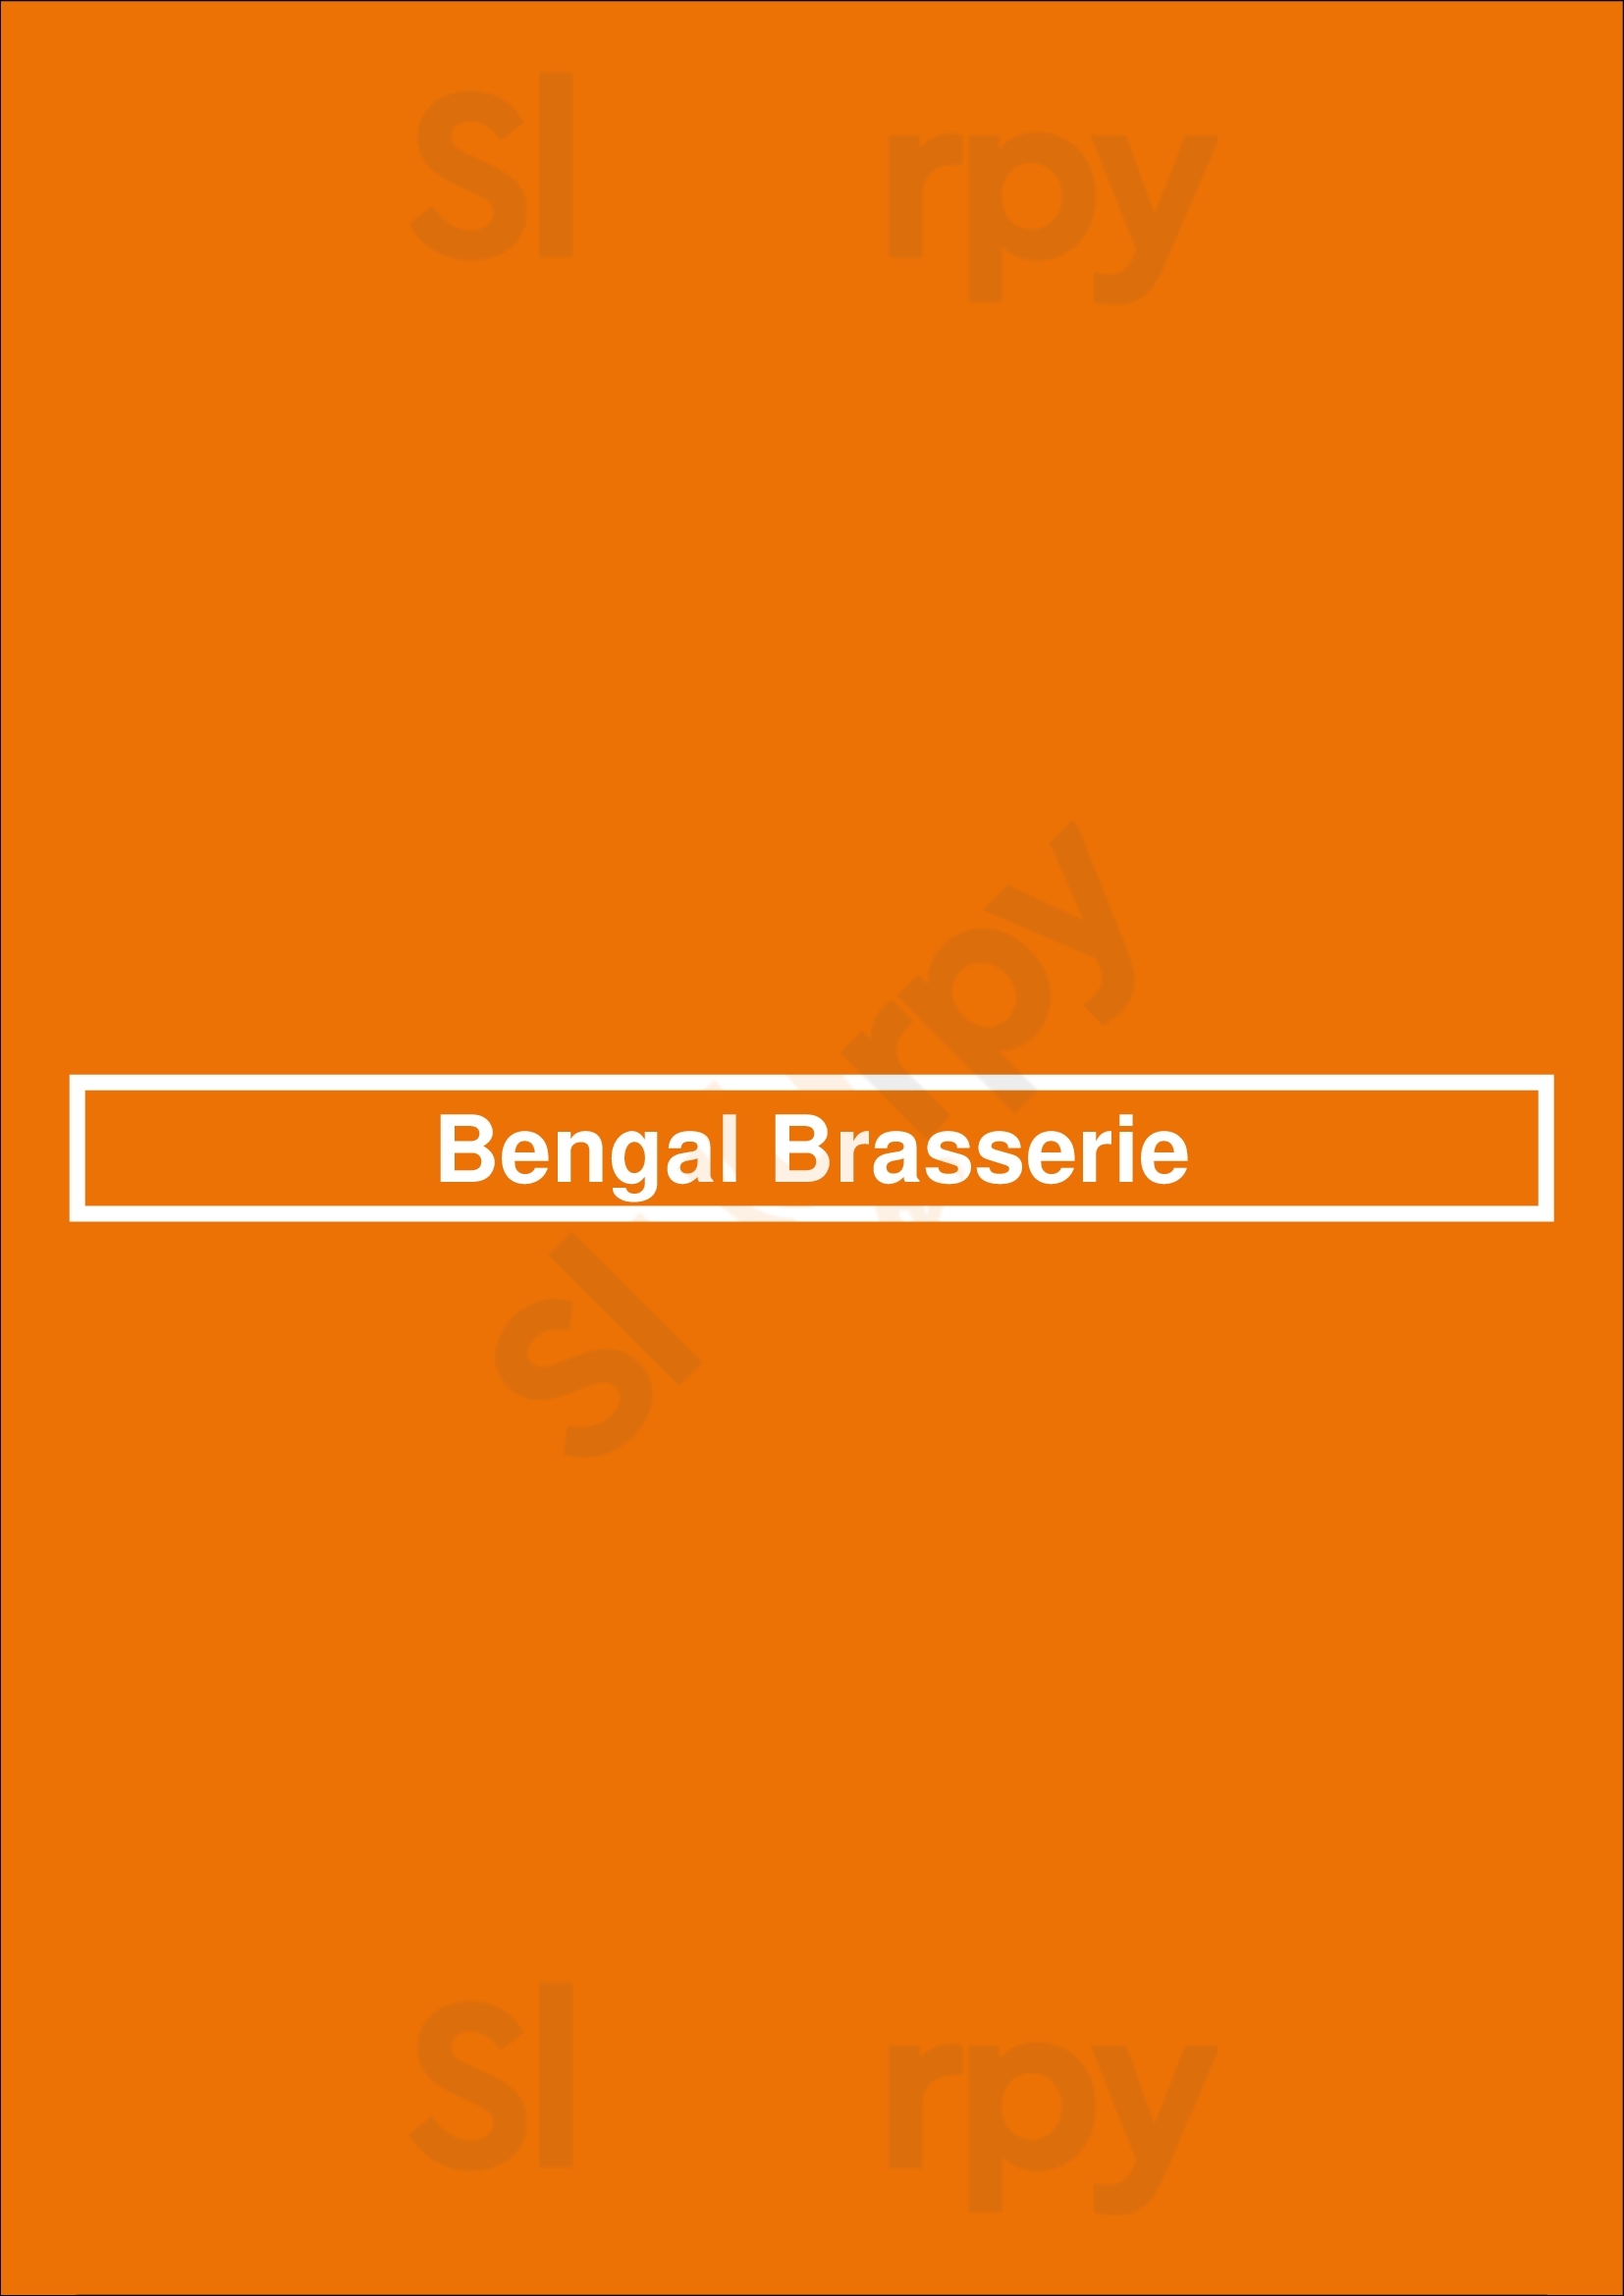 Bengal Brasserie Brighouse Menu - 1